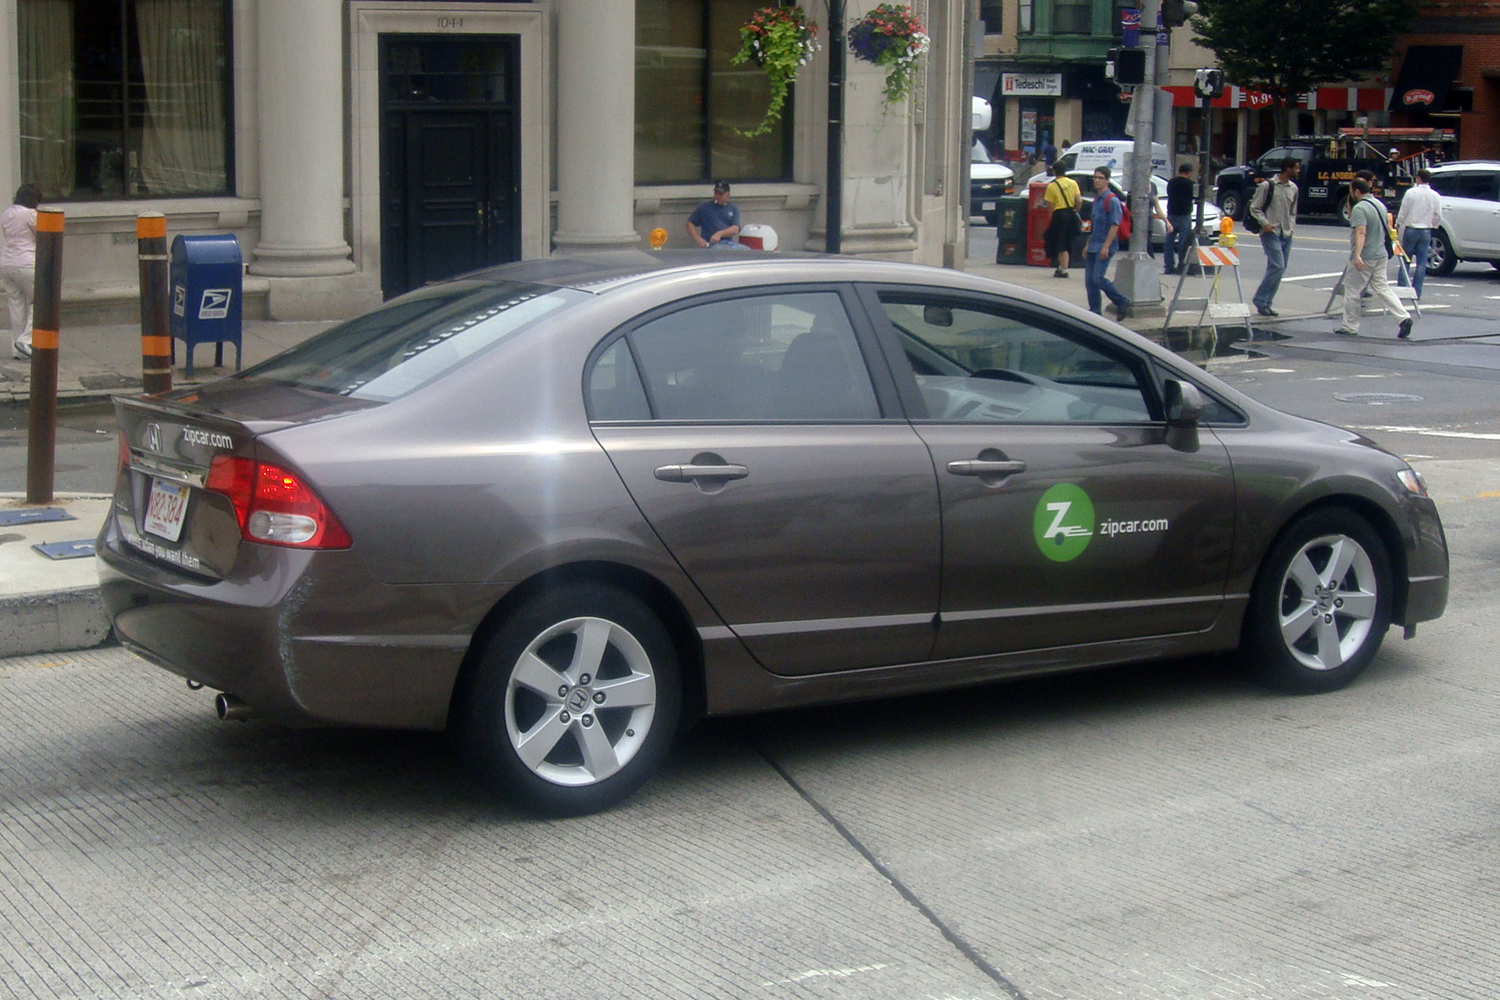 BOS Zipcar 07 2011 2810.jpg